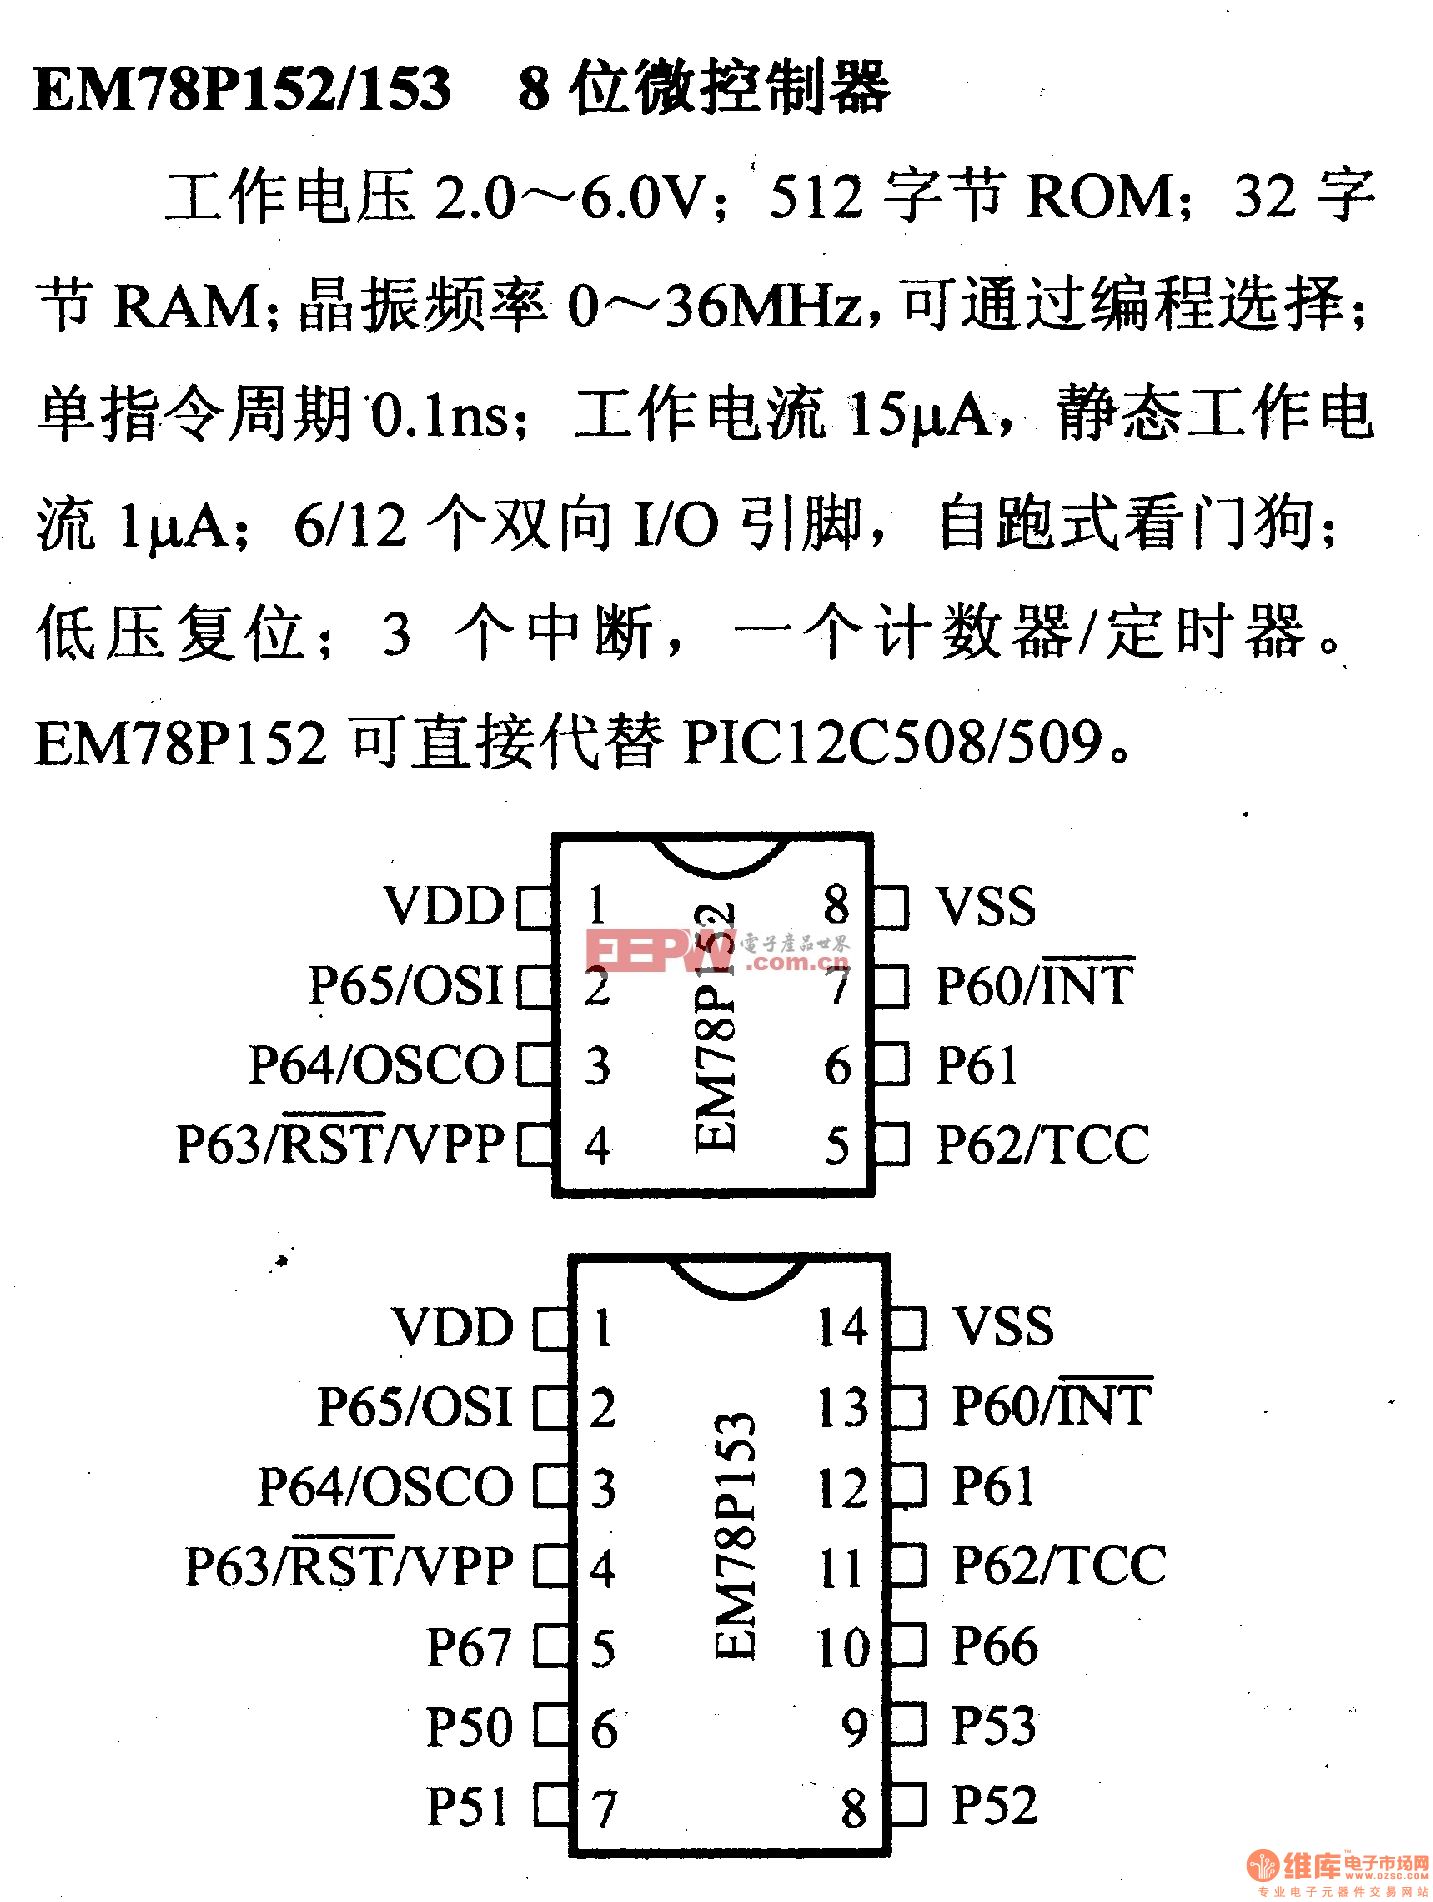 芯片引脚及主要特性em78p152/153,8位微控制器